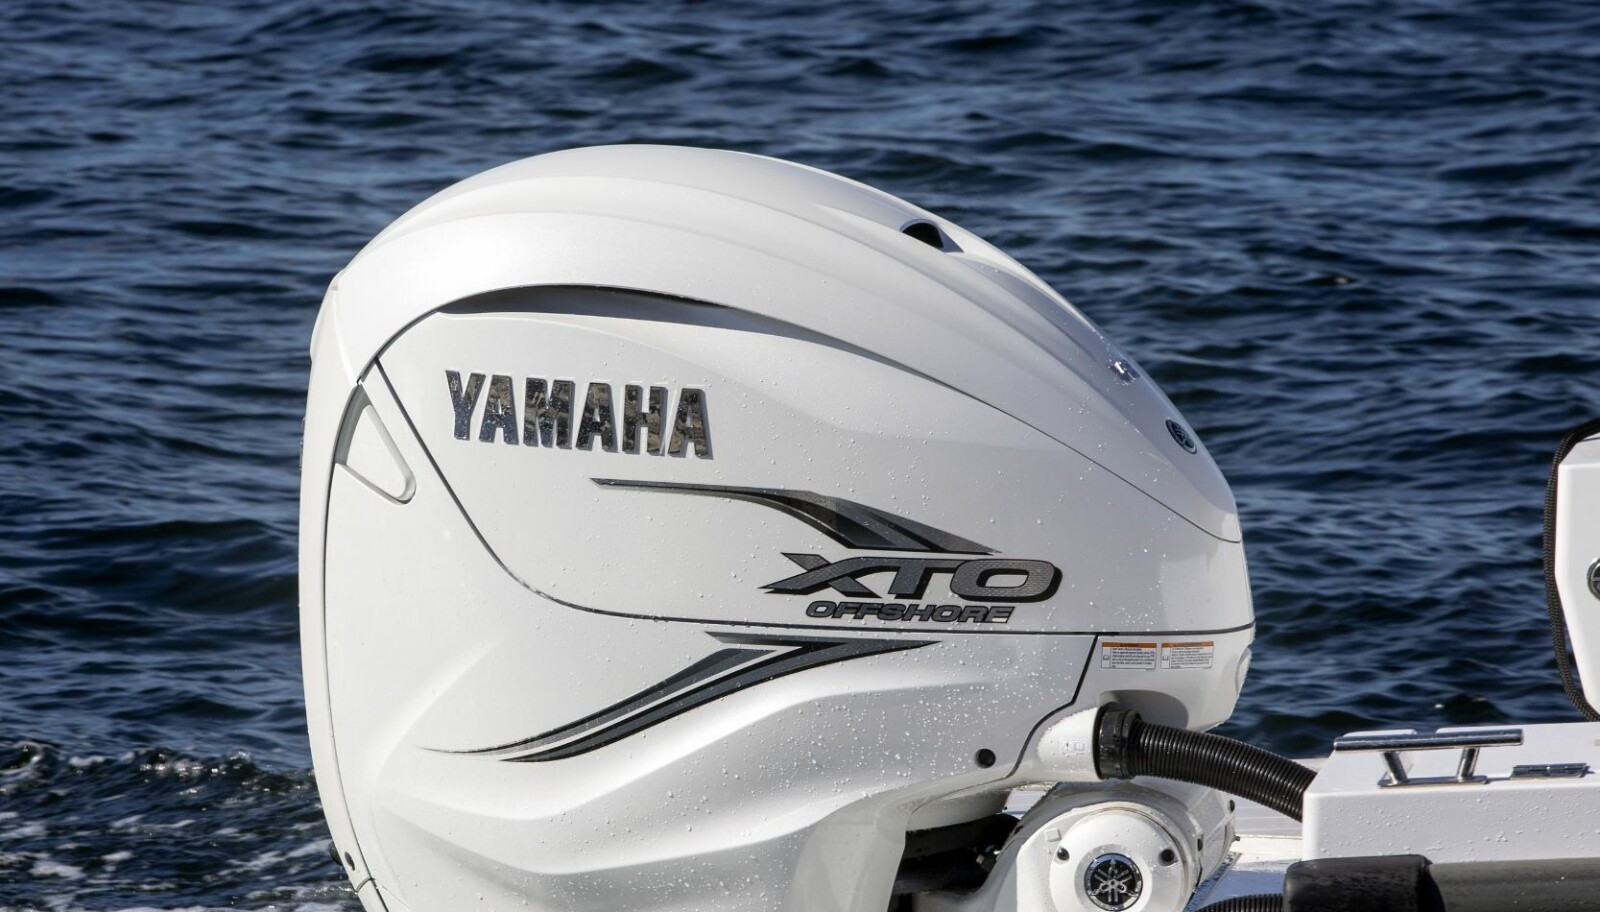 BAMSE BRAKAR: Den nye V8-motoren fra Yamaha er langt tyngre og kraftigere enn forgjengeren.